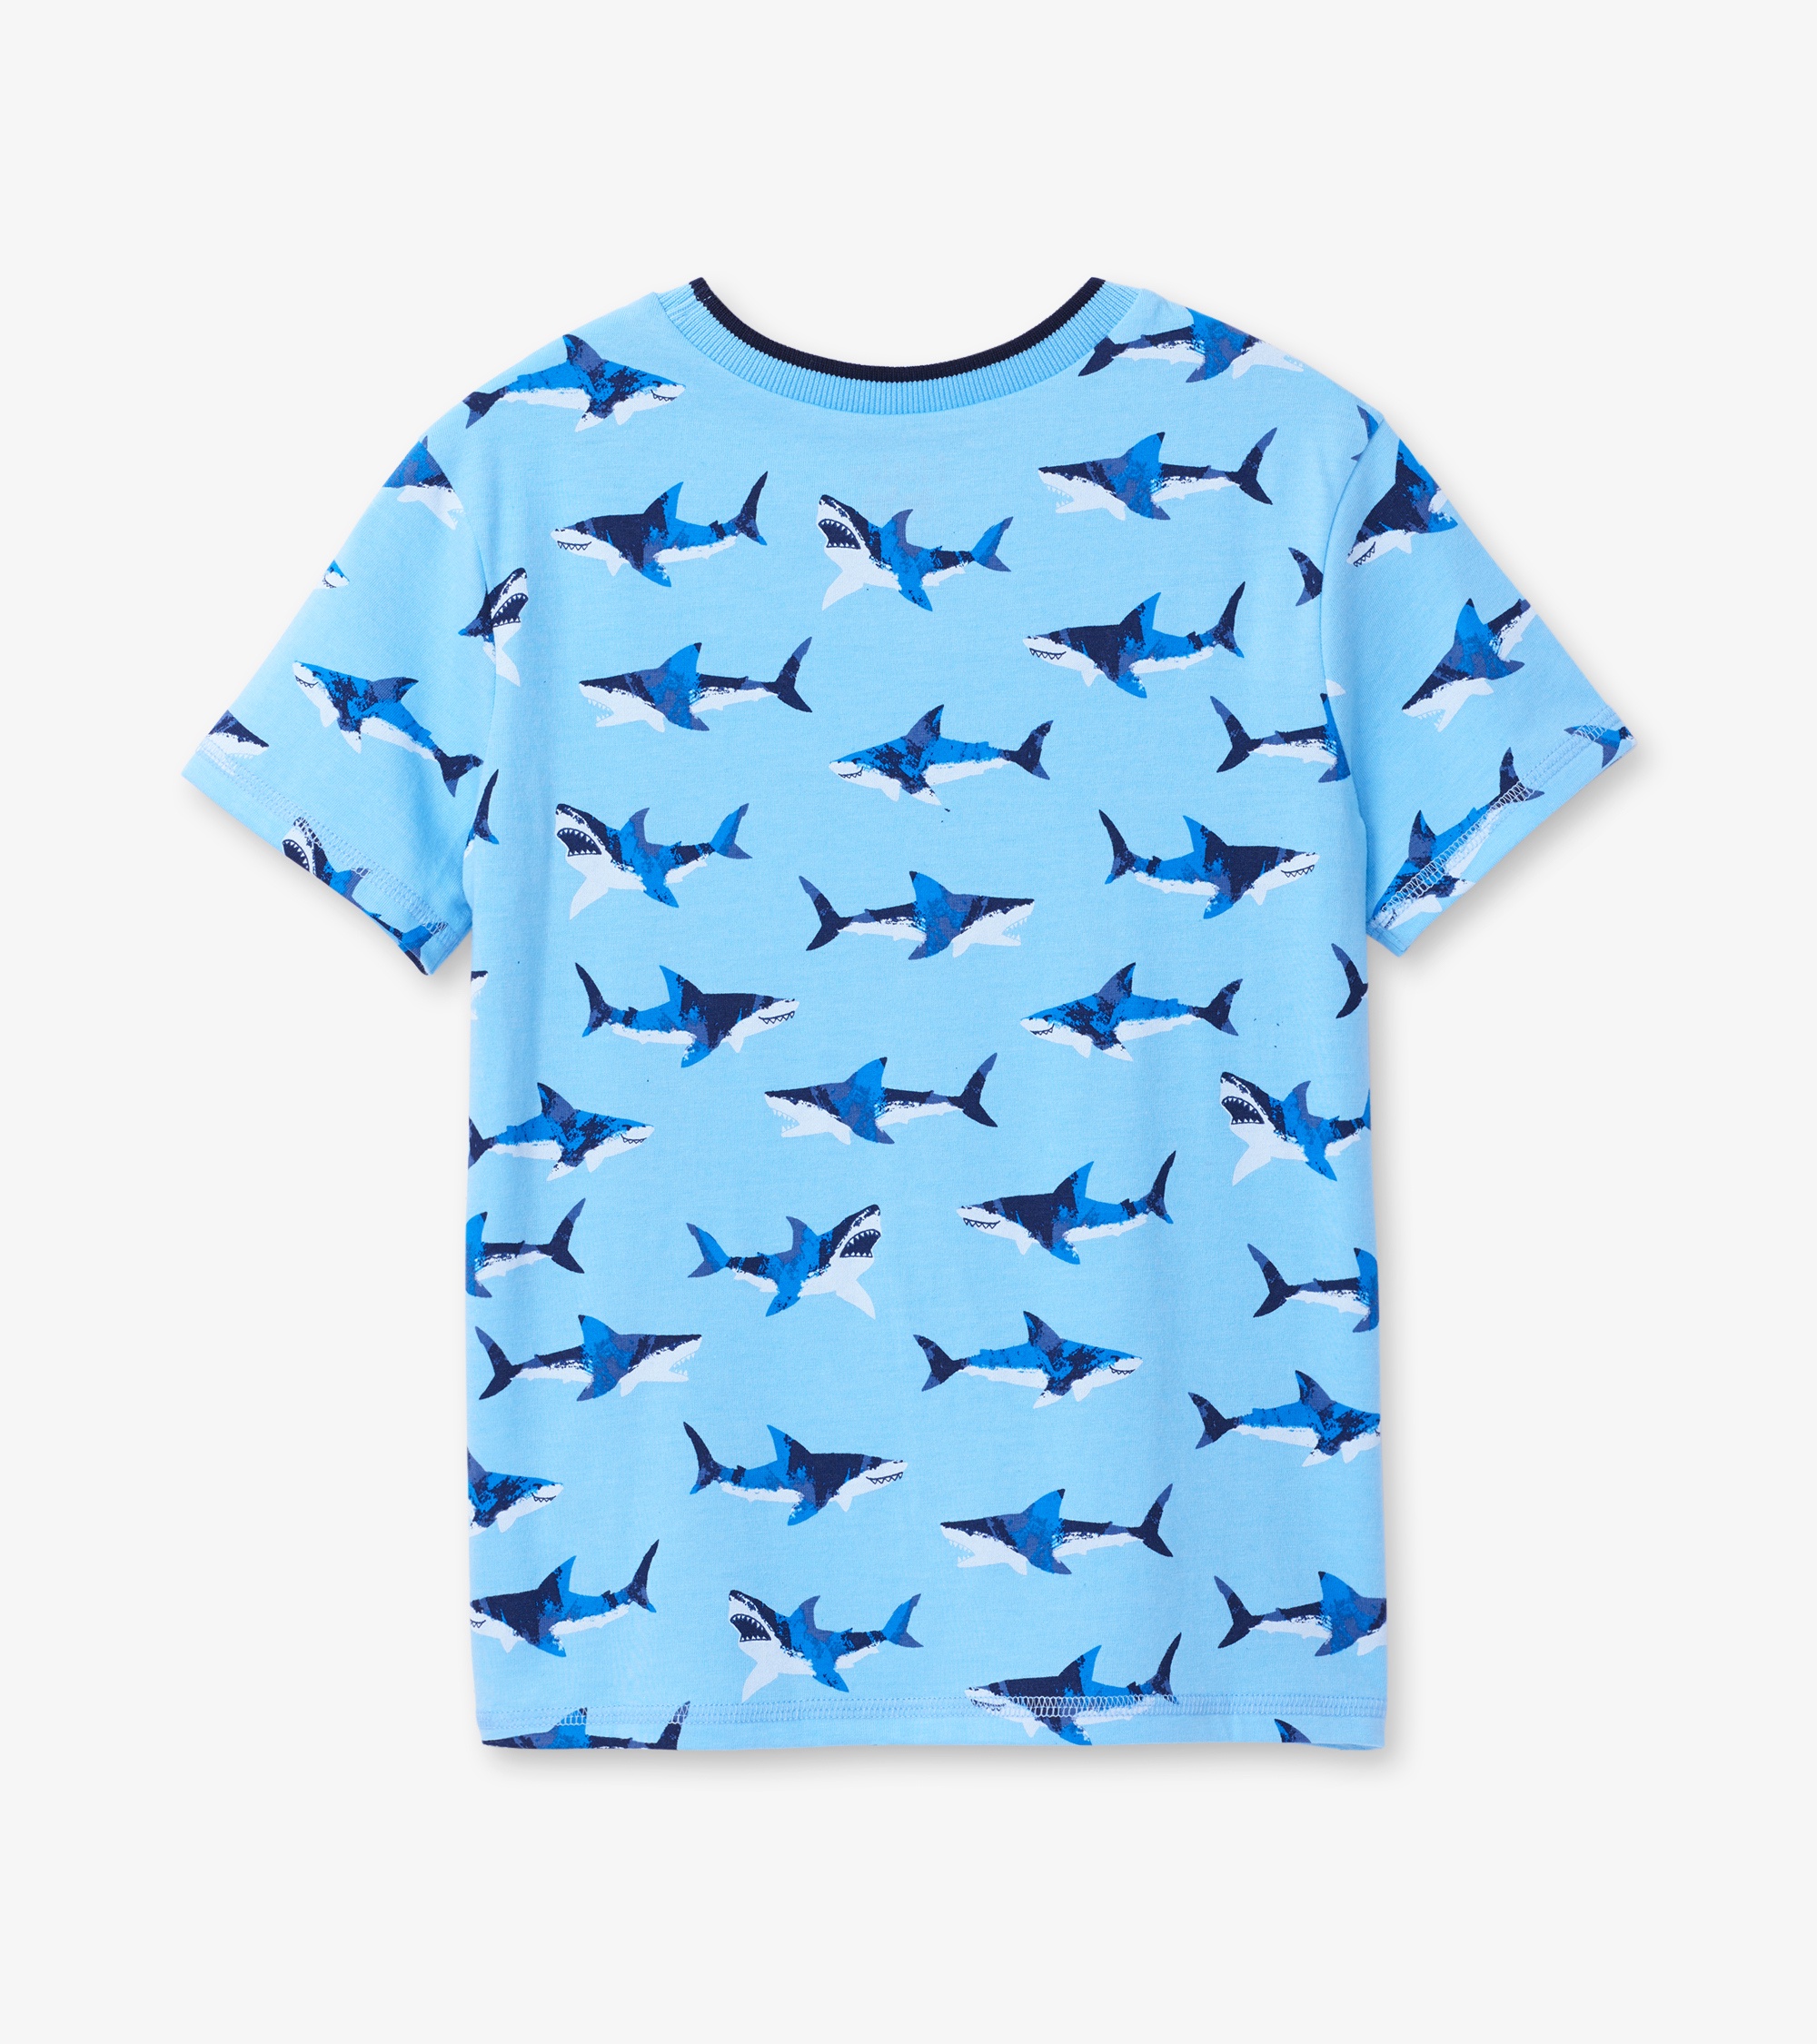 Sharkblox Roblox T Shirt - New Home Plans Design